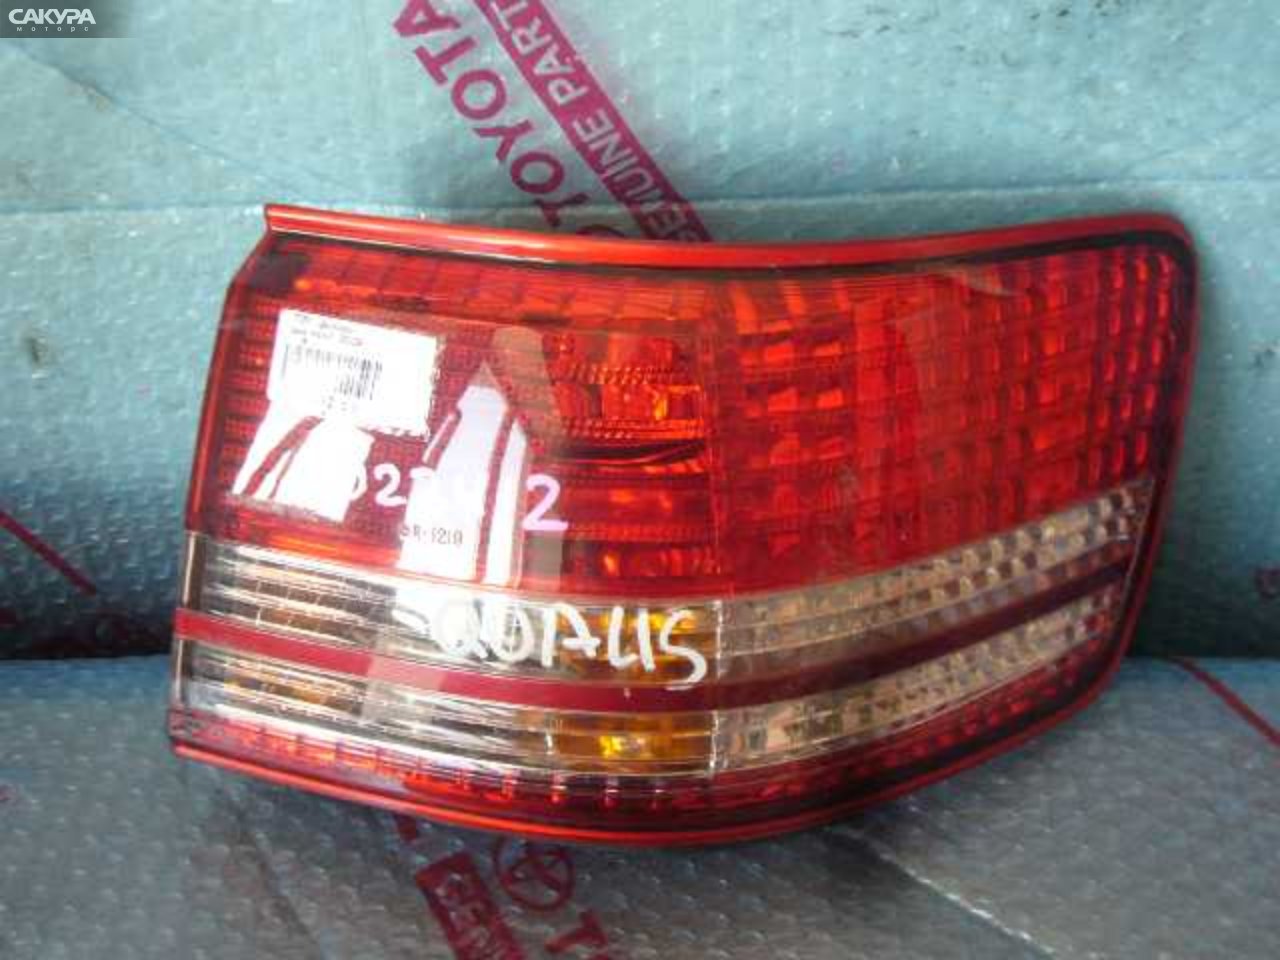 Фонарь стоп-сигнала правый Toyota Mark II Qualis MCV21W 33-28: купить в Сакура Кемерово.